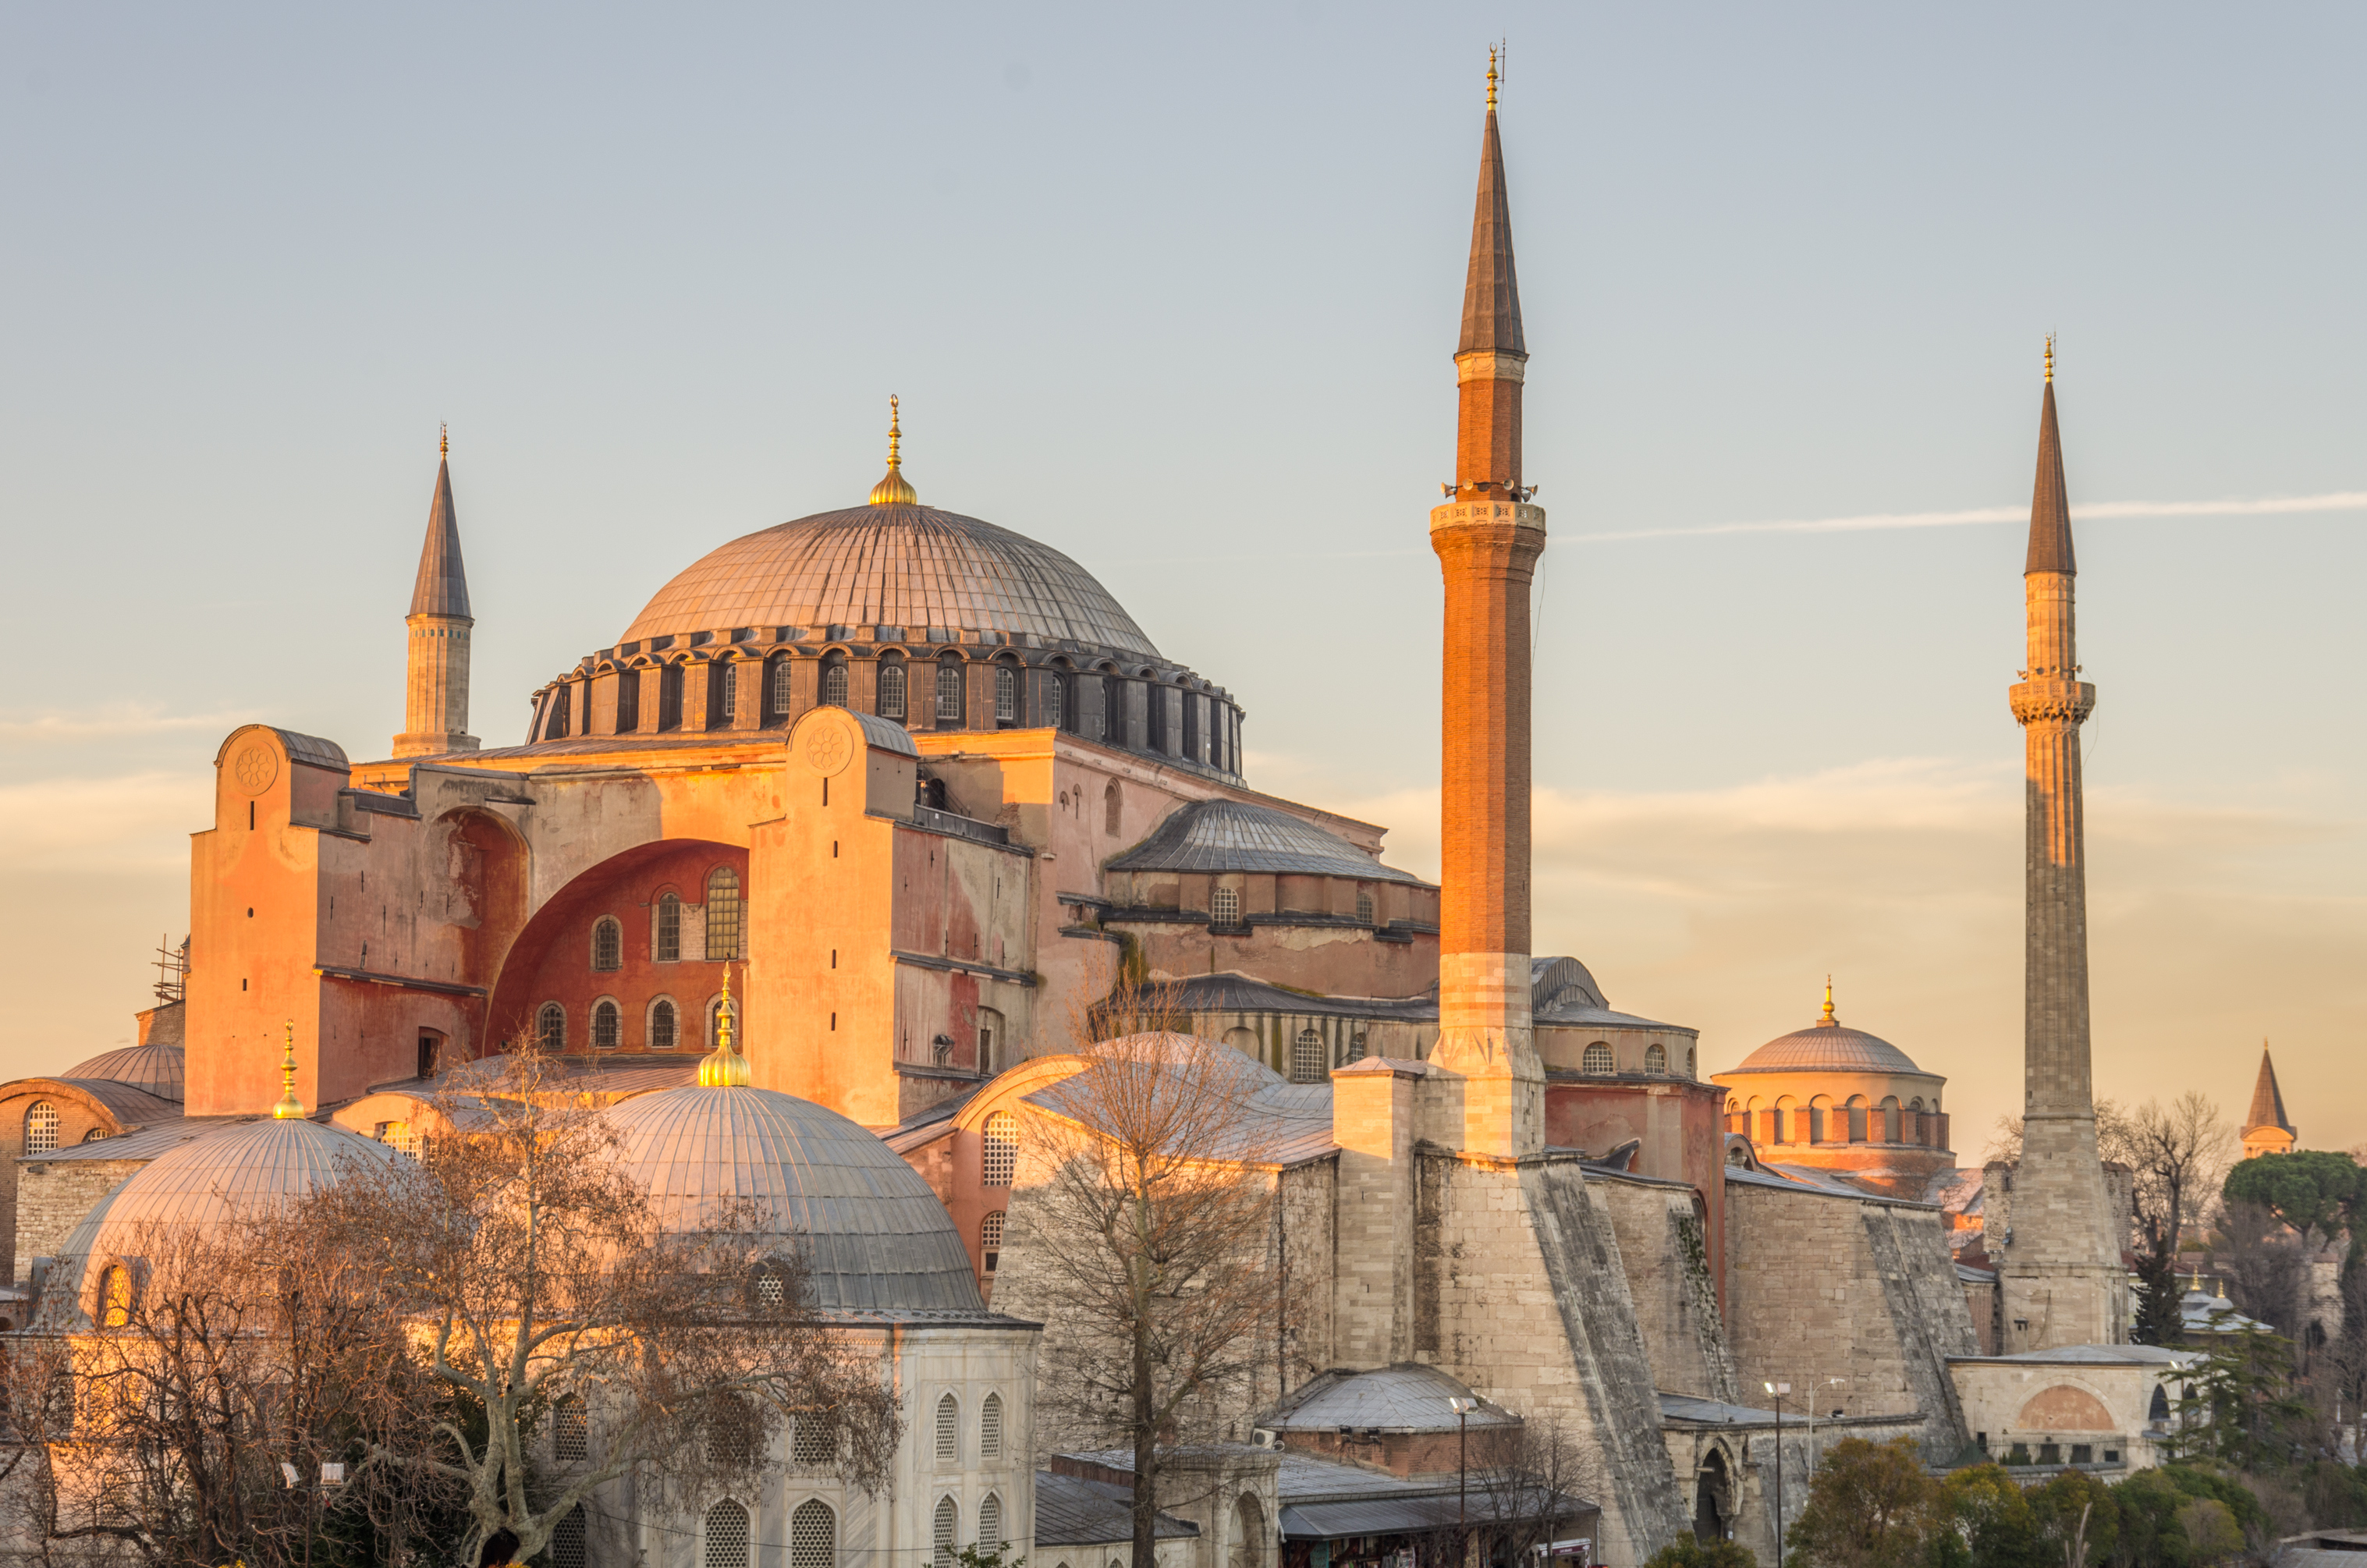 Hagia Sophia Basilica in Istanbul